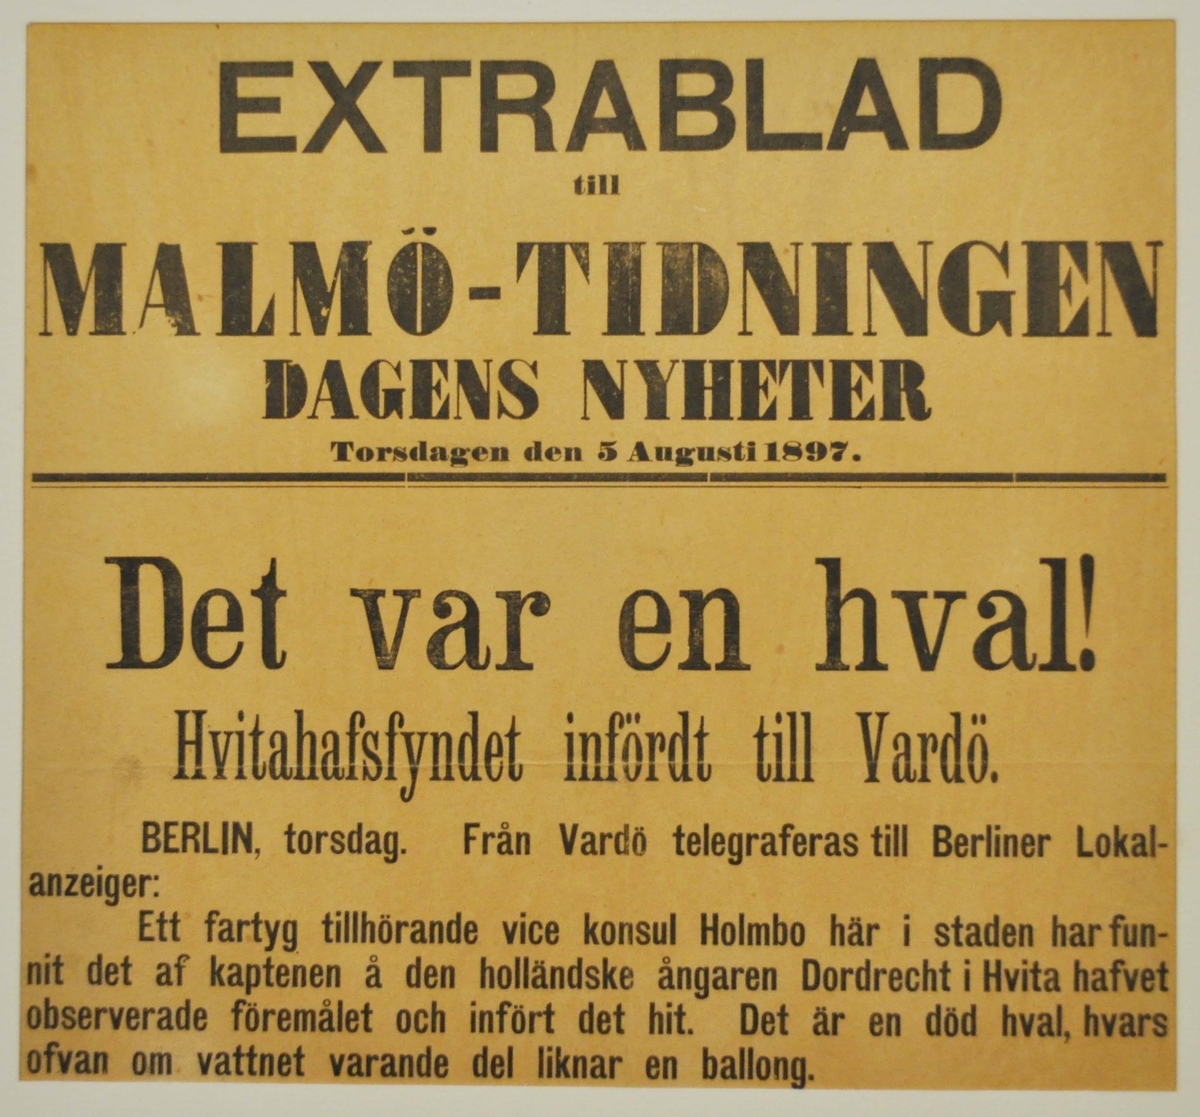 Löpsedel för Malmö-Tidingen Dagens Nyheter med rubrik: "Det var en hval!"